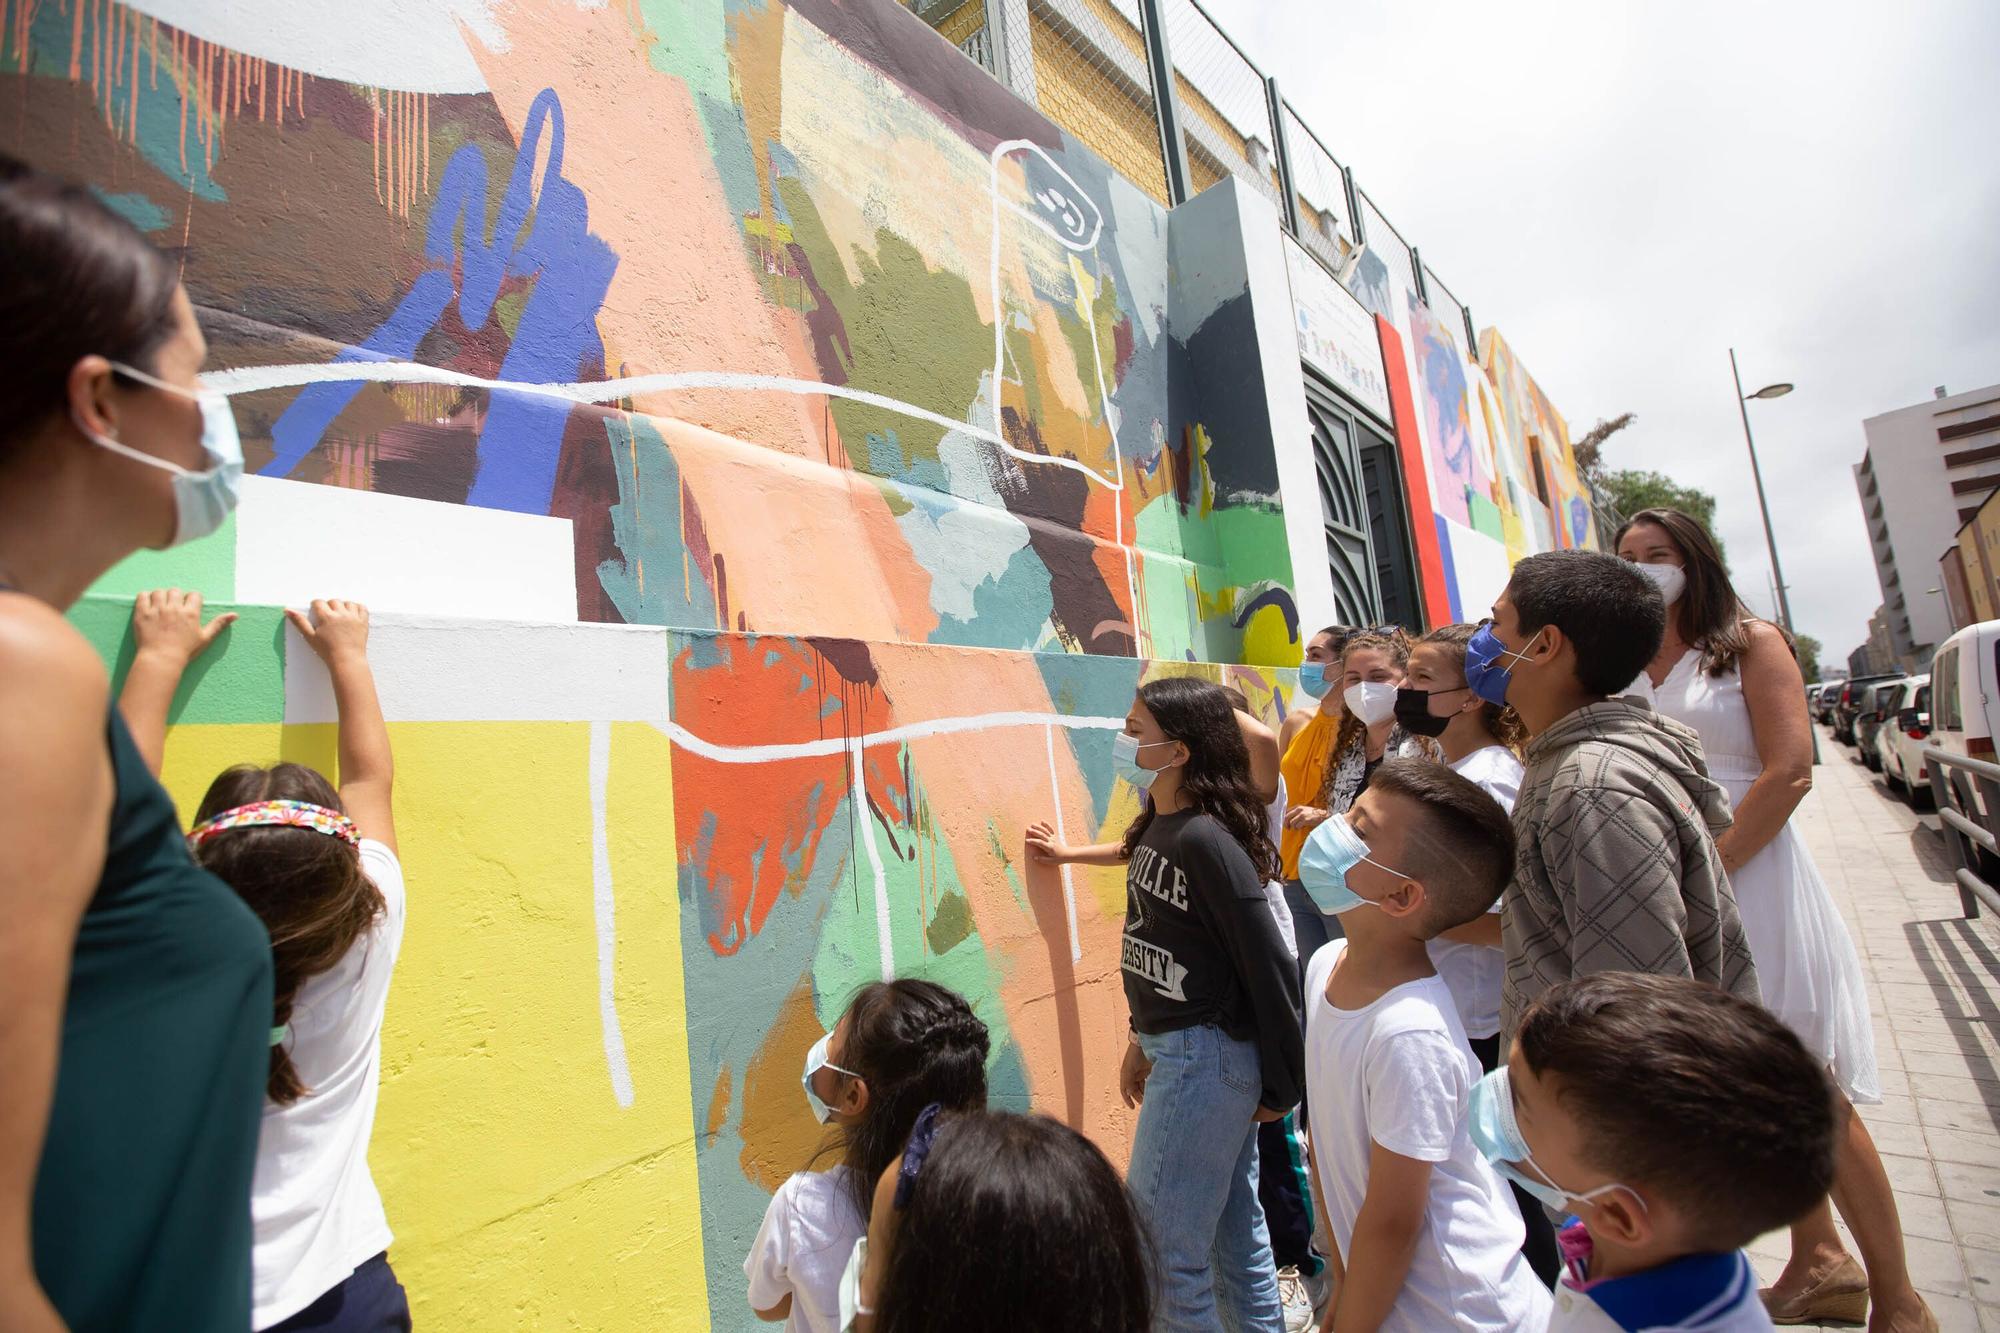 Visita al mural "Sumérgete en Santa Cruz"